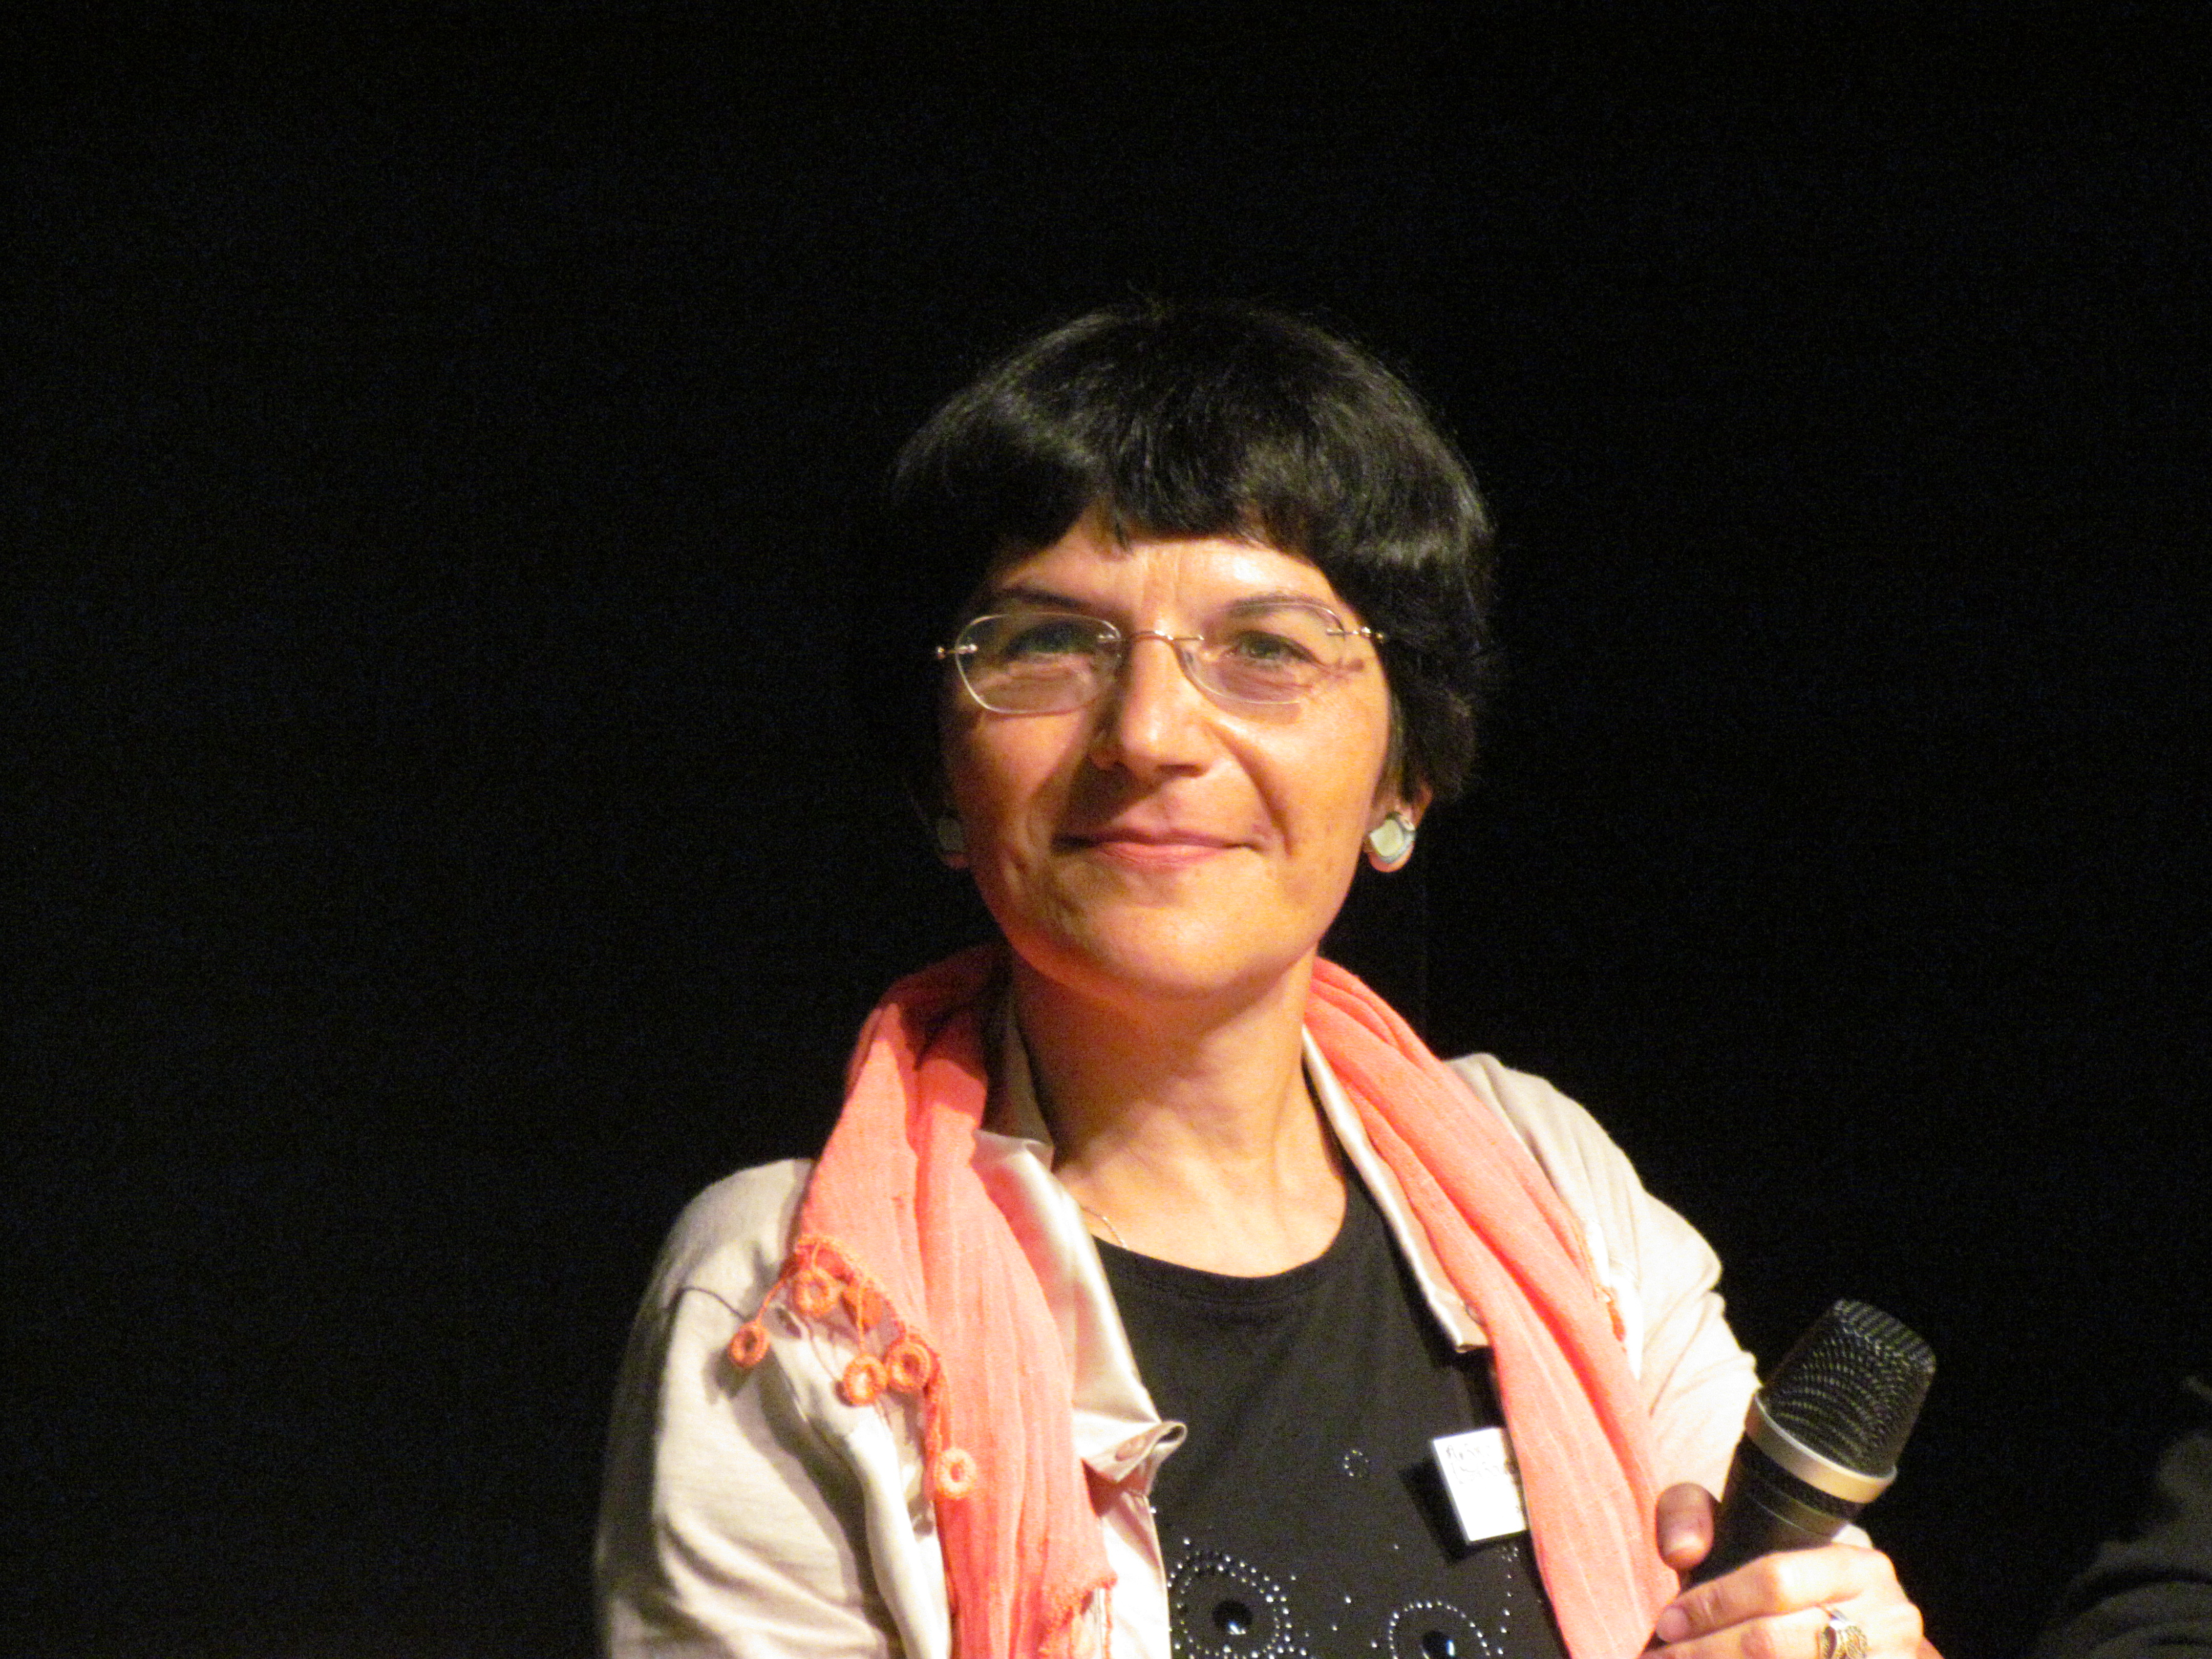 Ioana Pârvulescu